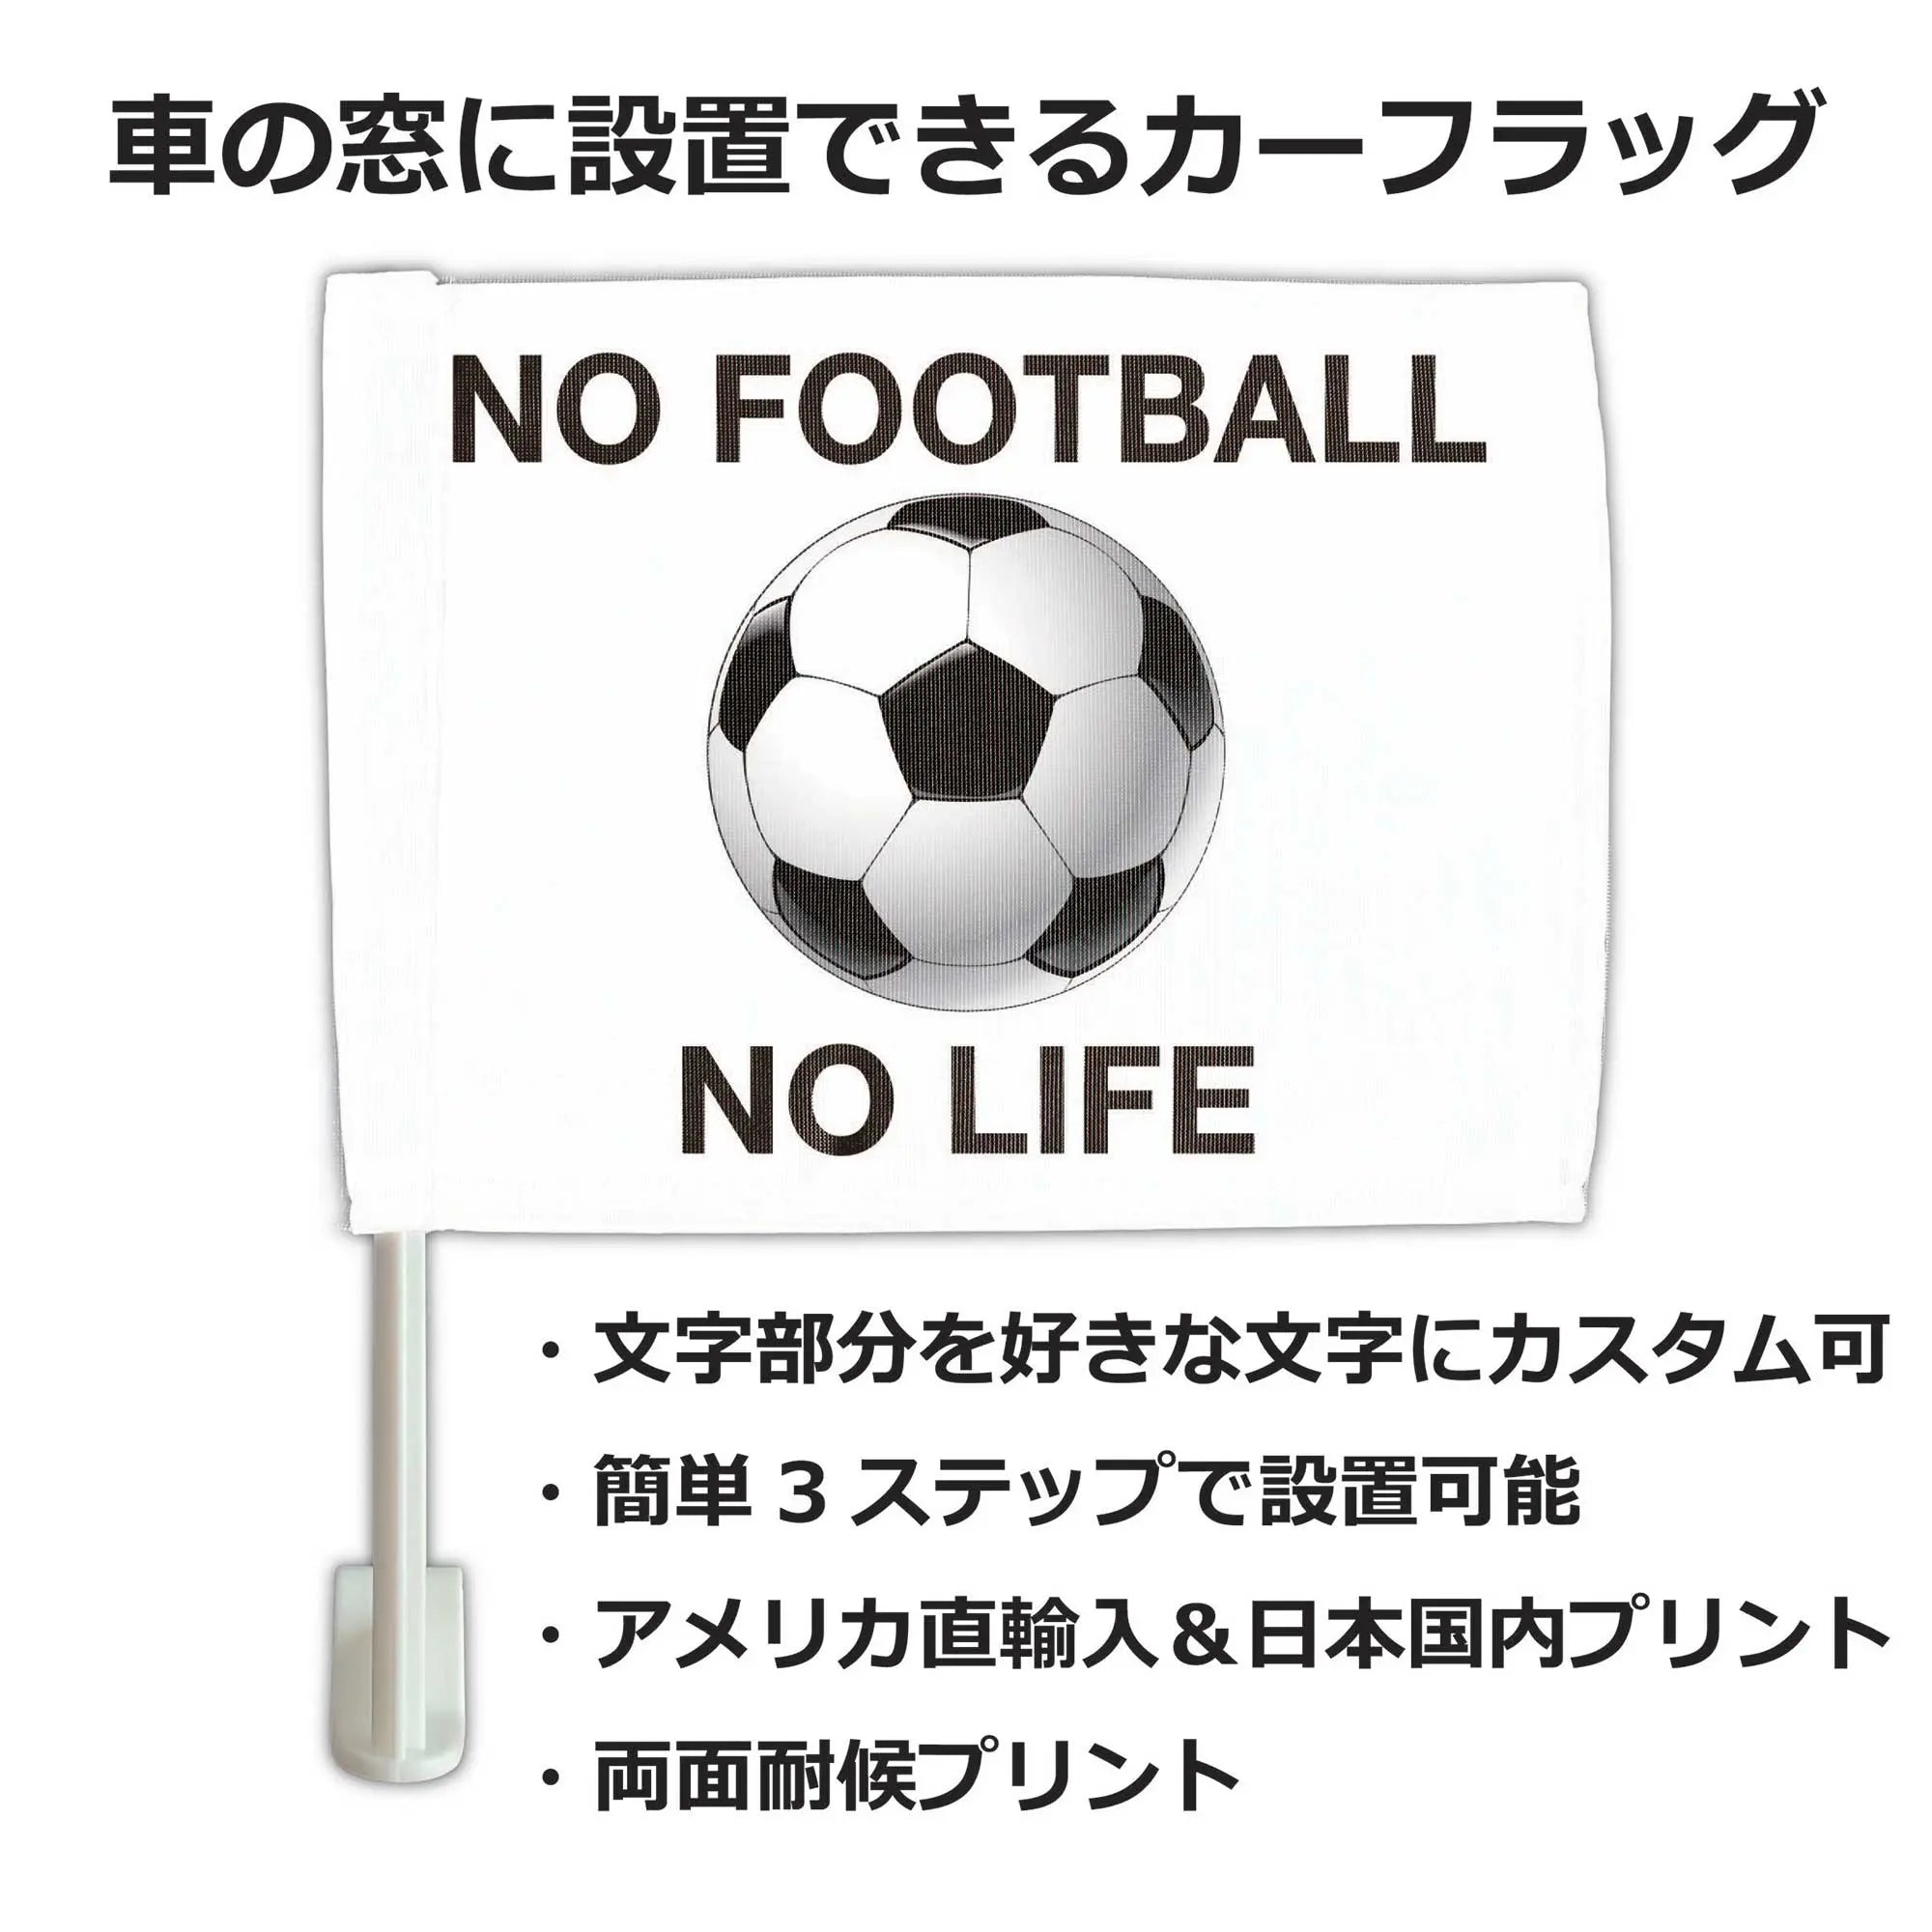 カーフラッグ】FOOTBALL/サッカー・フットボール/自動車用オリジナルフラッグ・旗 PL8HERO(プレートヒーロー)